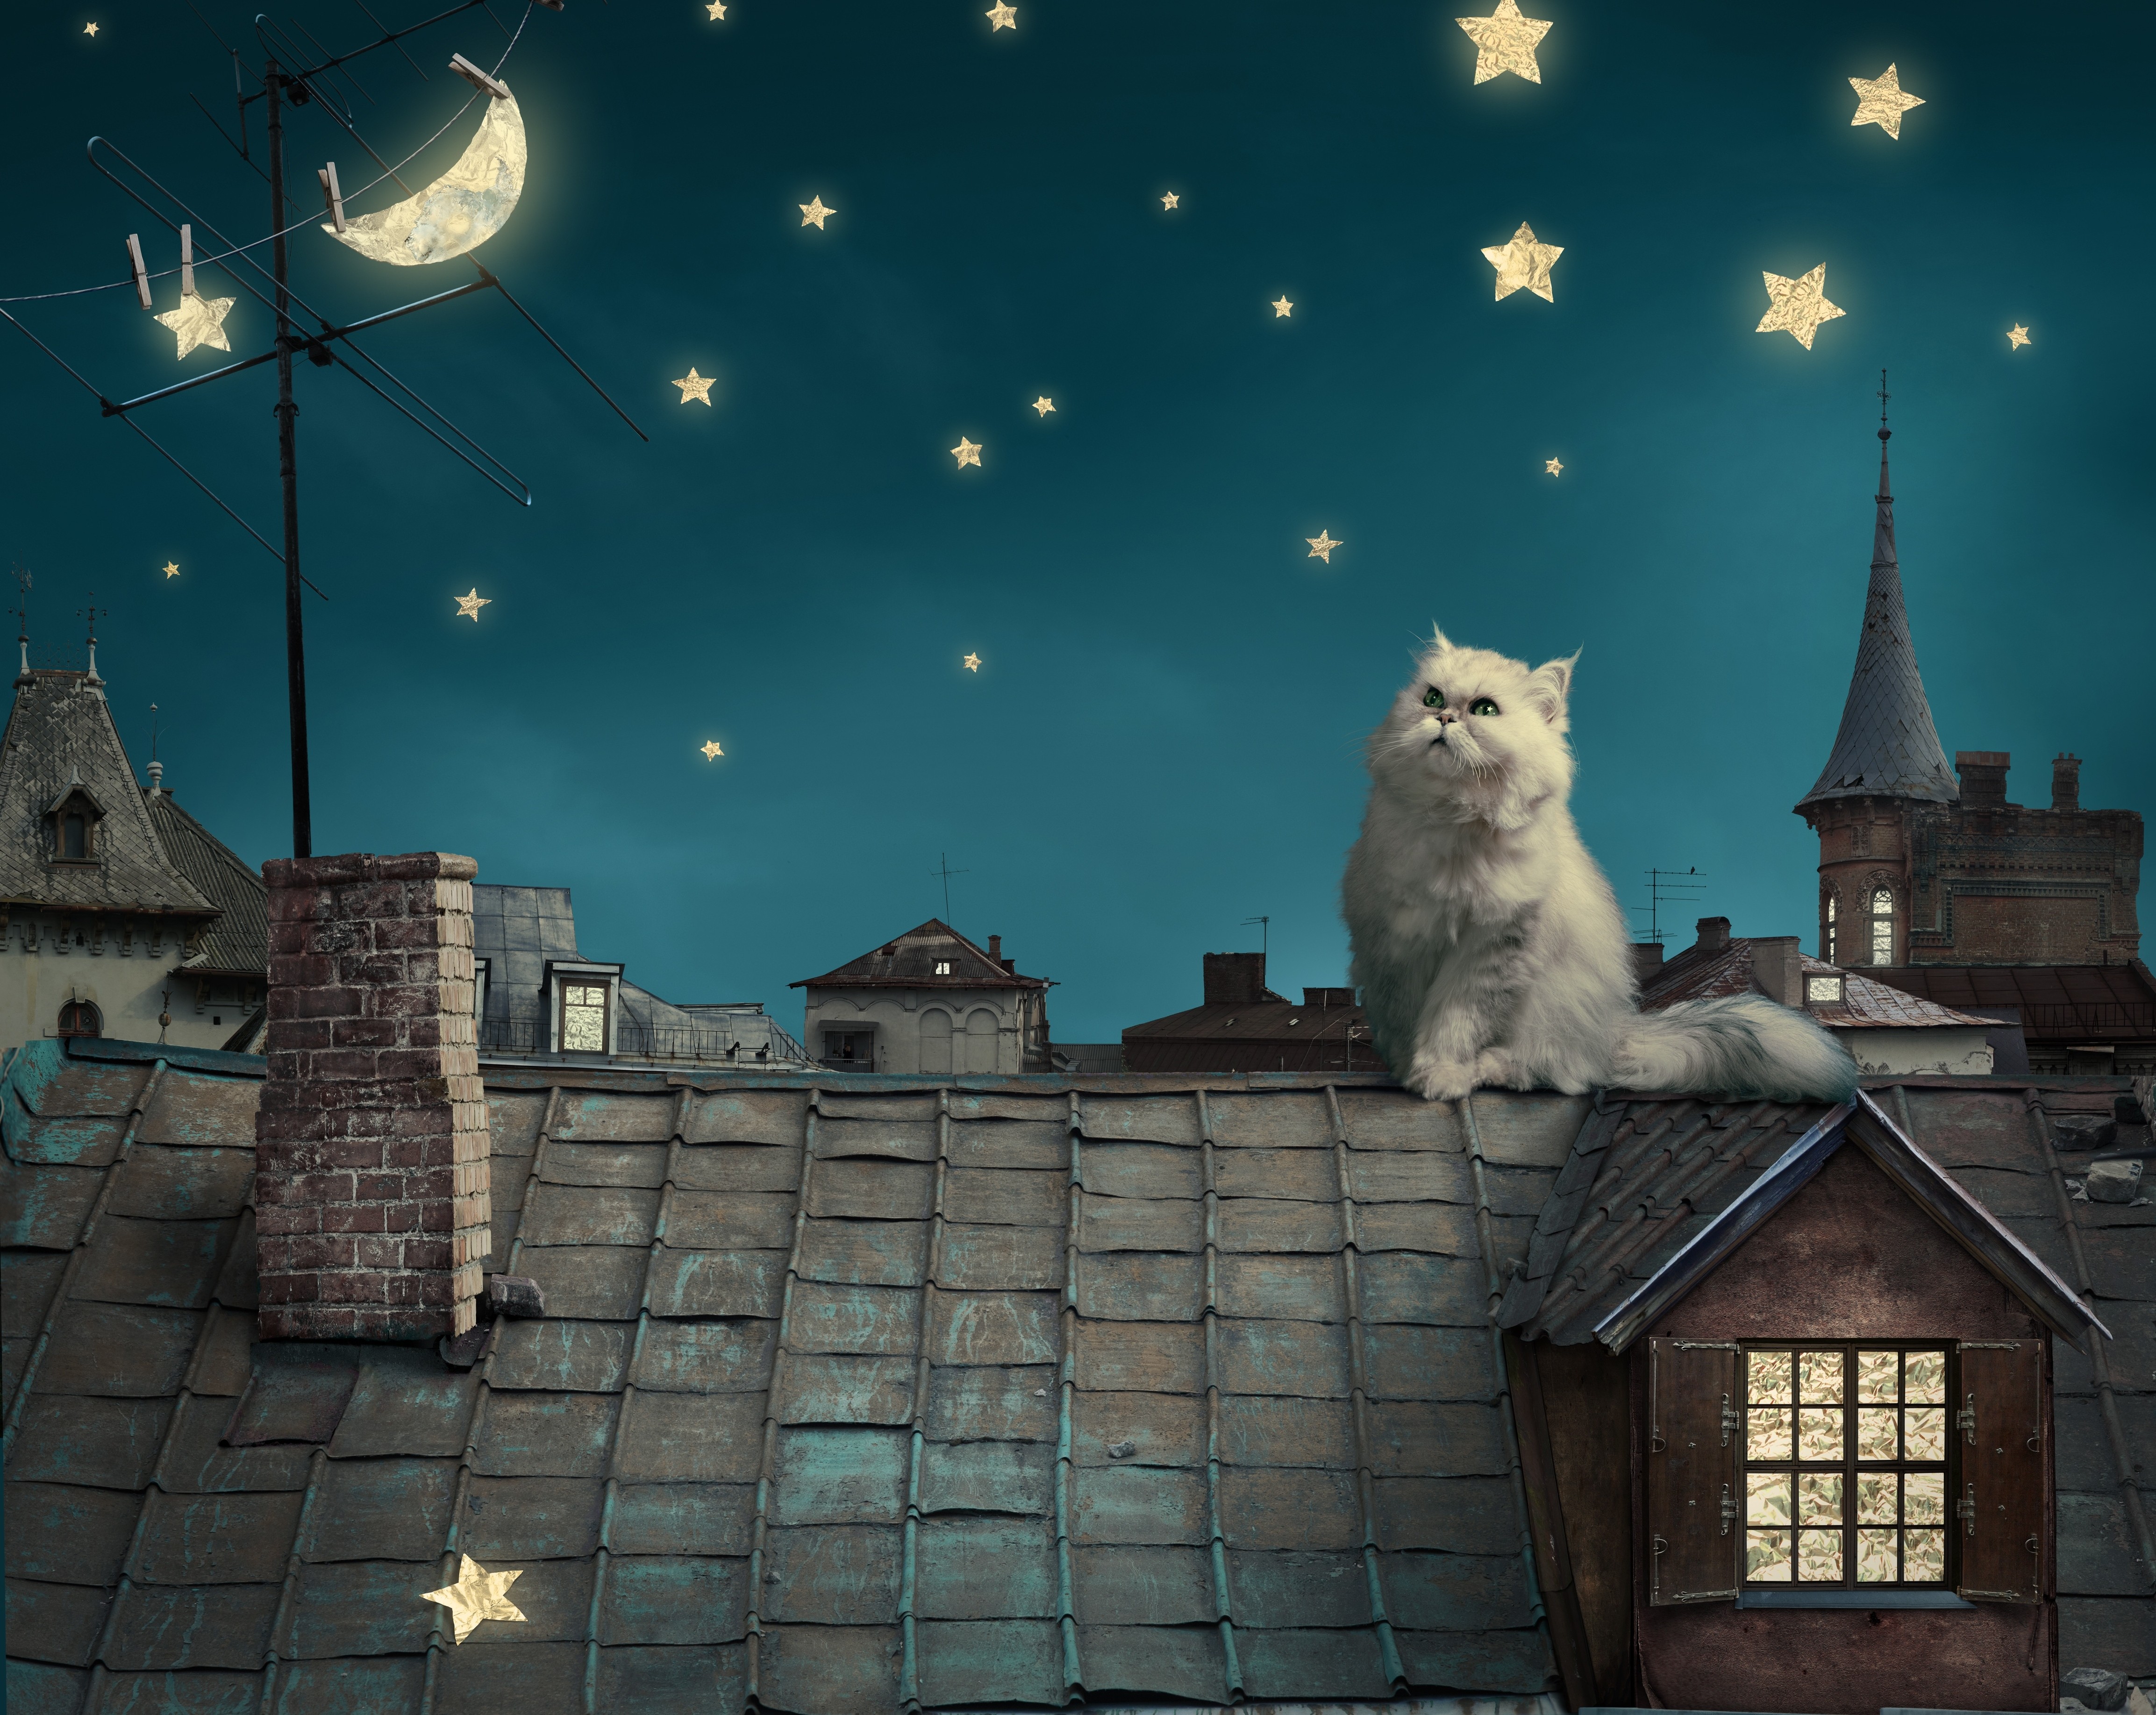 General 4614x3671 animals cats stars Moon crescent moon house rooftops digital art persian cat mammals sky